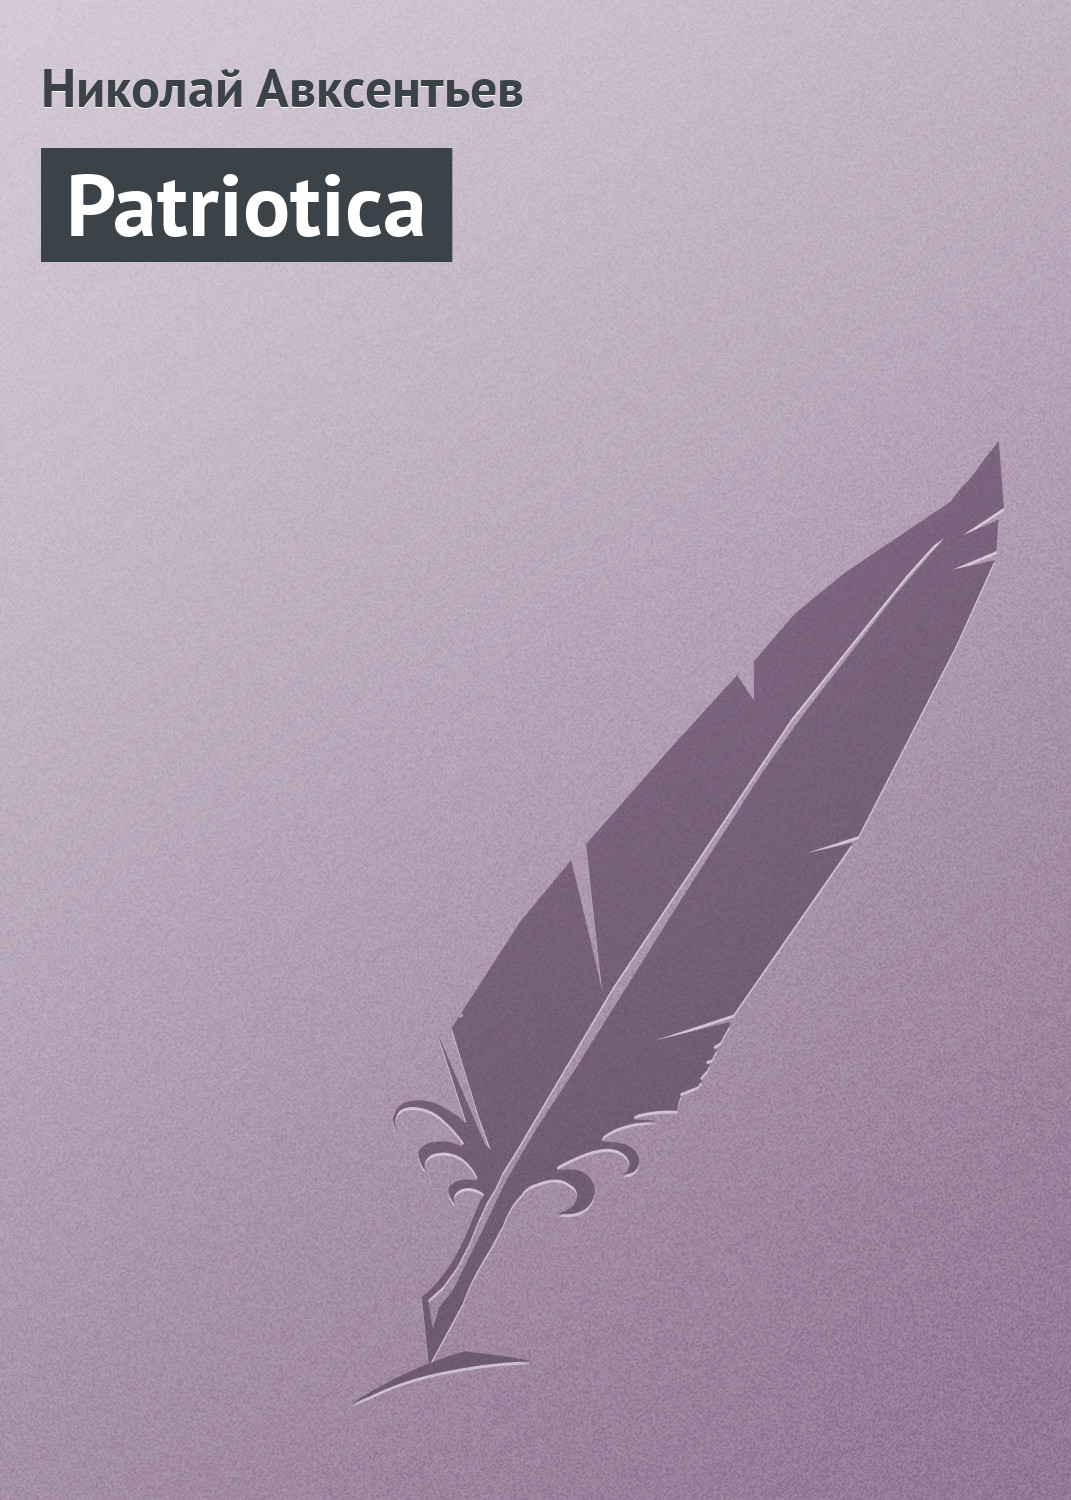 Книга Patriotica из серии , созданная Николай Авксентьев, может относится к жанру Публицистика: прочее. Стоимость электронной книги Patriotica с идентификатором 2849435 составляет 9.99 руб.